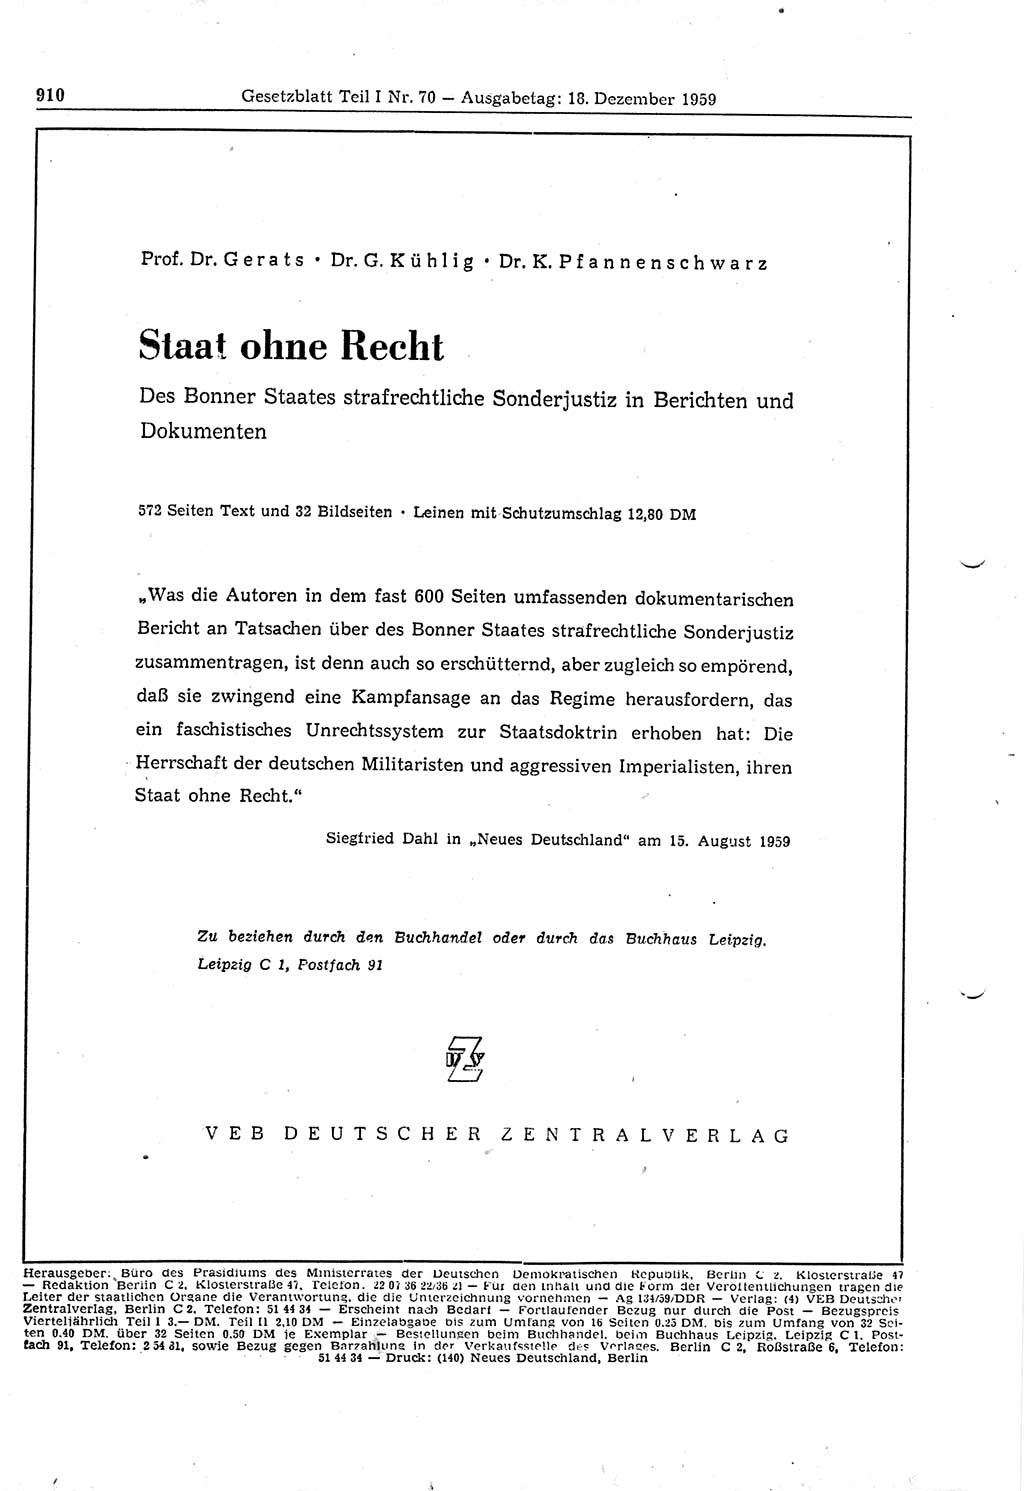 Gesetzblatt (GBl.) der Deutschen Demokratischen Republik (DDR) Teil Ⅰ 1959, Seite 910 (GBl. DDR Ⅰ 1959, S. 910)